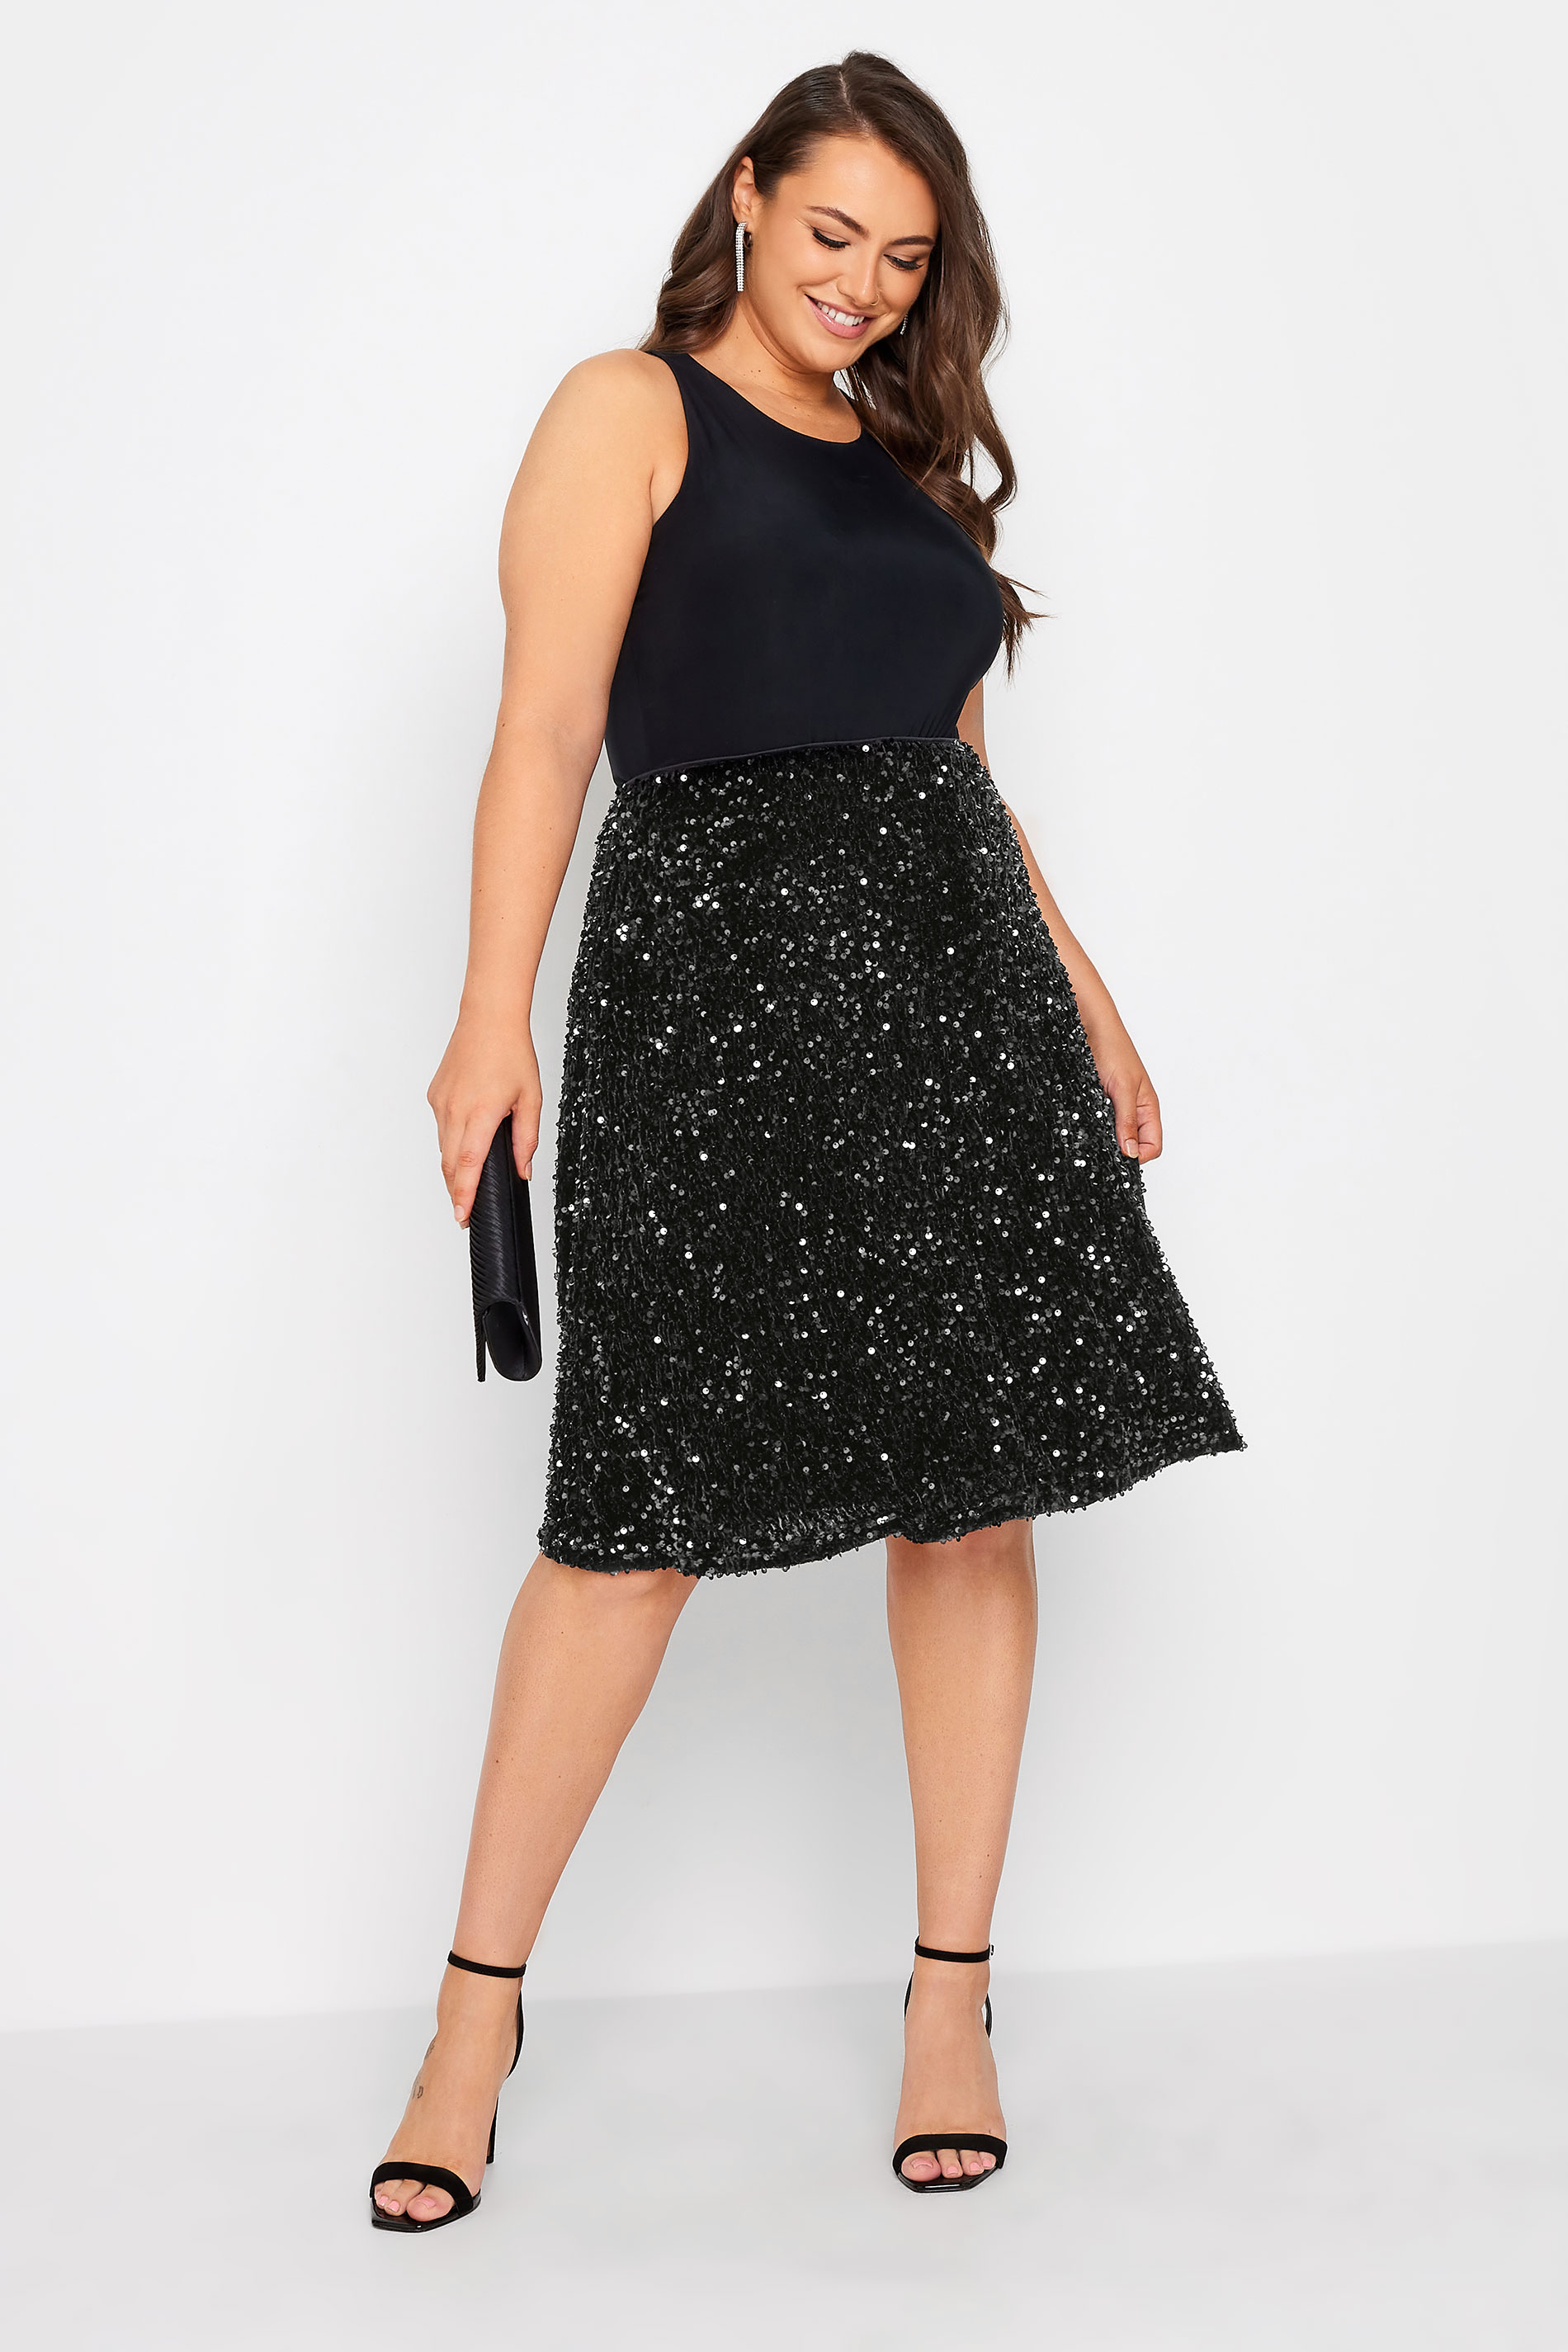 YOURS LONDON Plus Size Black Velvet Sequin Skater Skirt | Yours Clothing 1